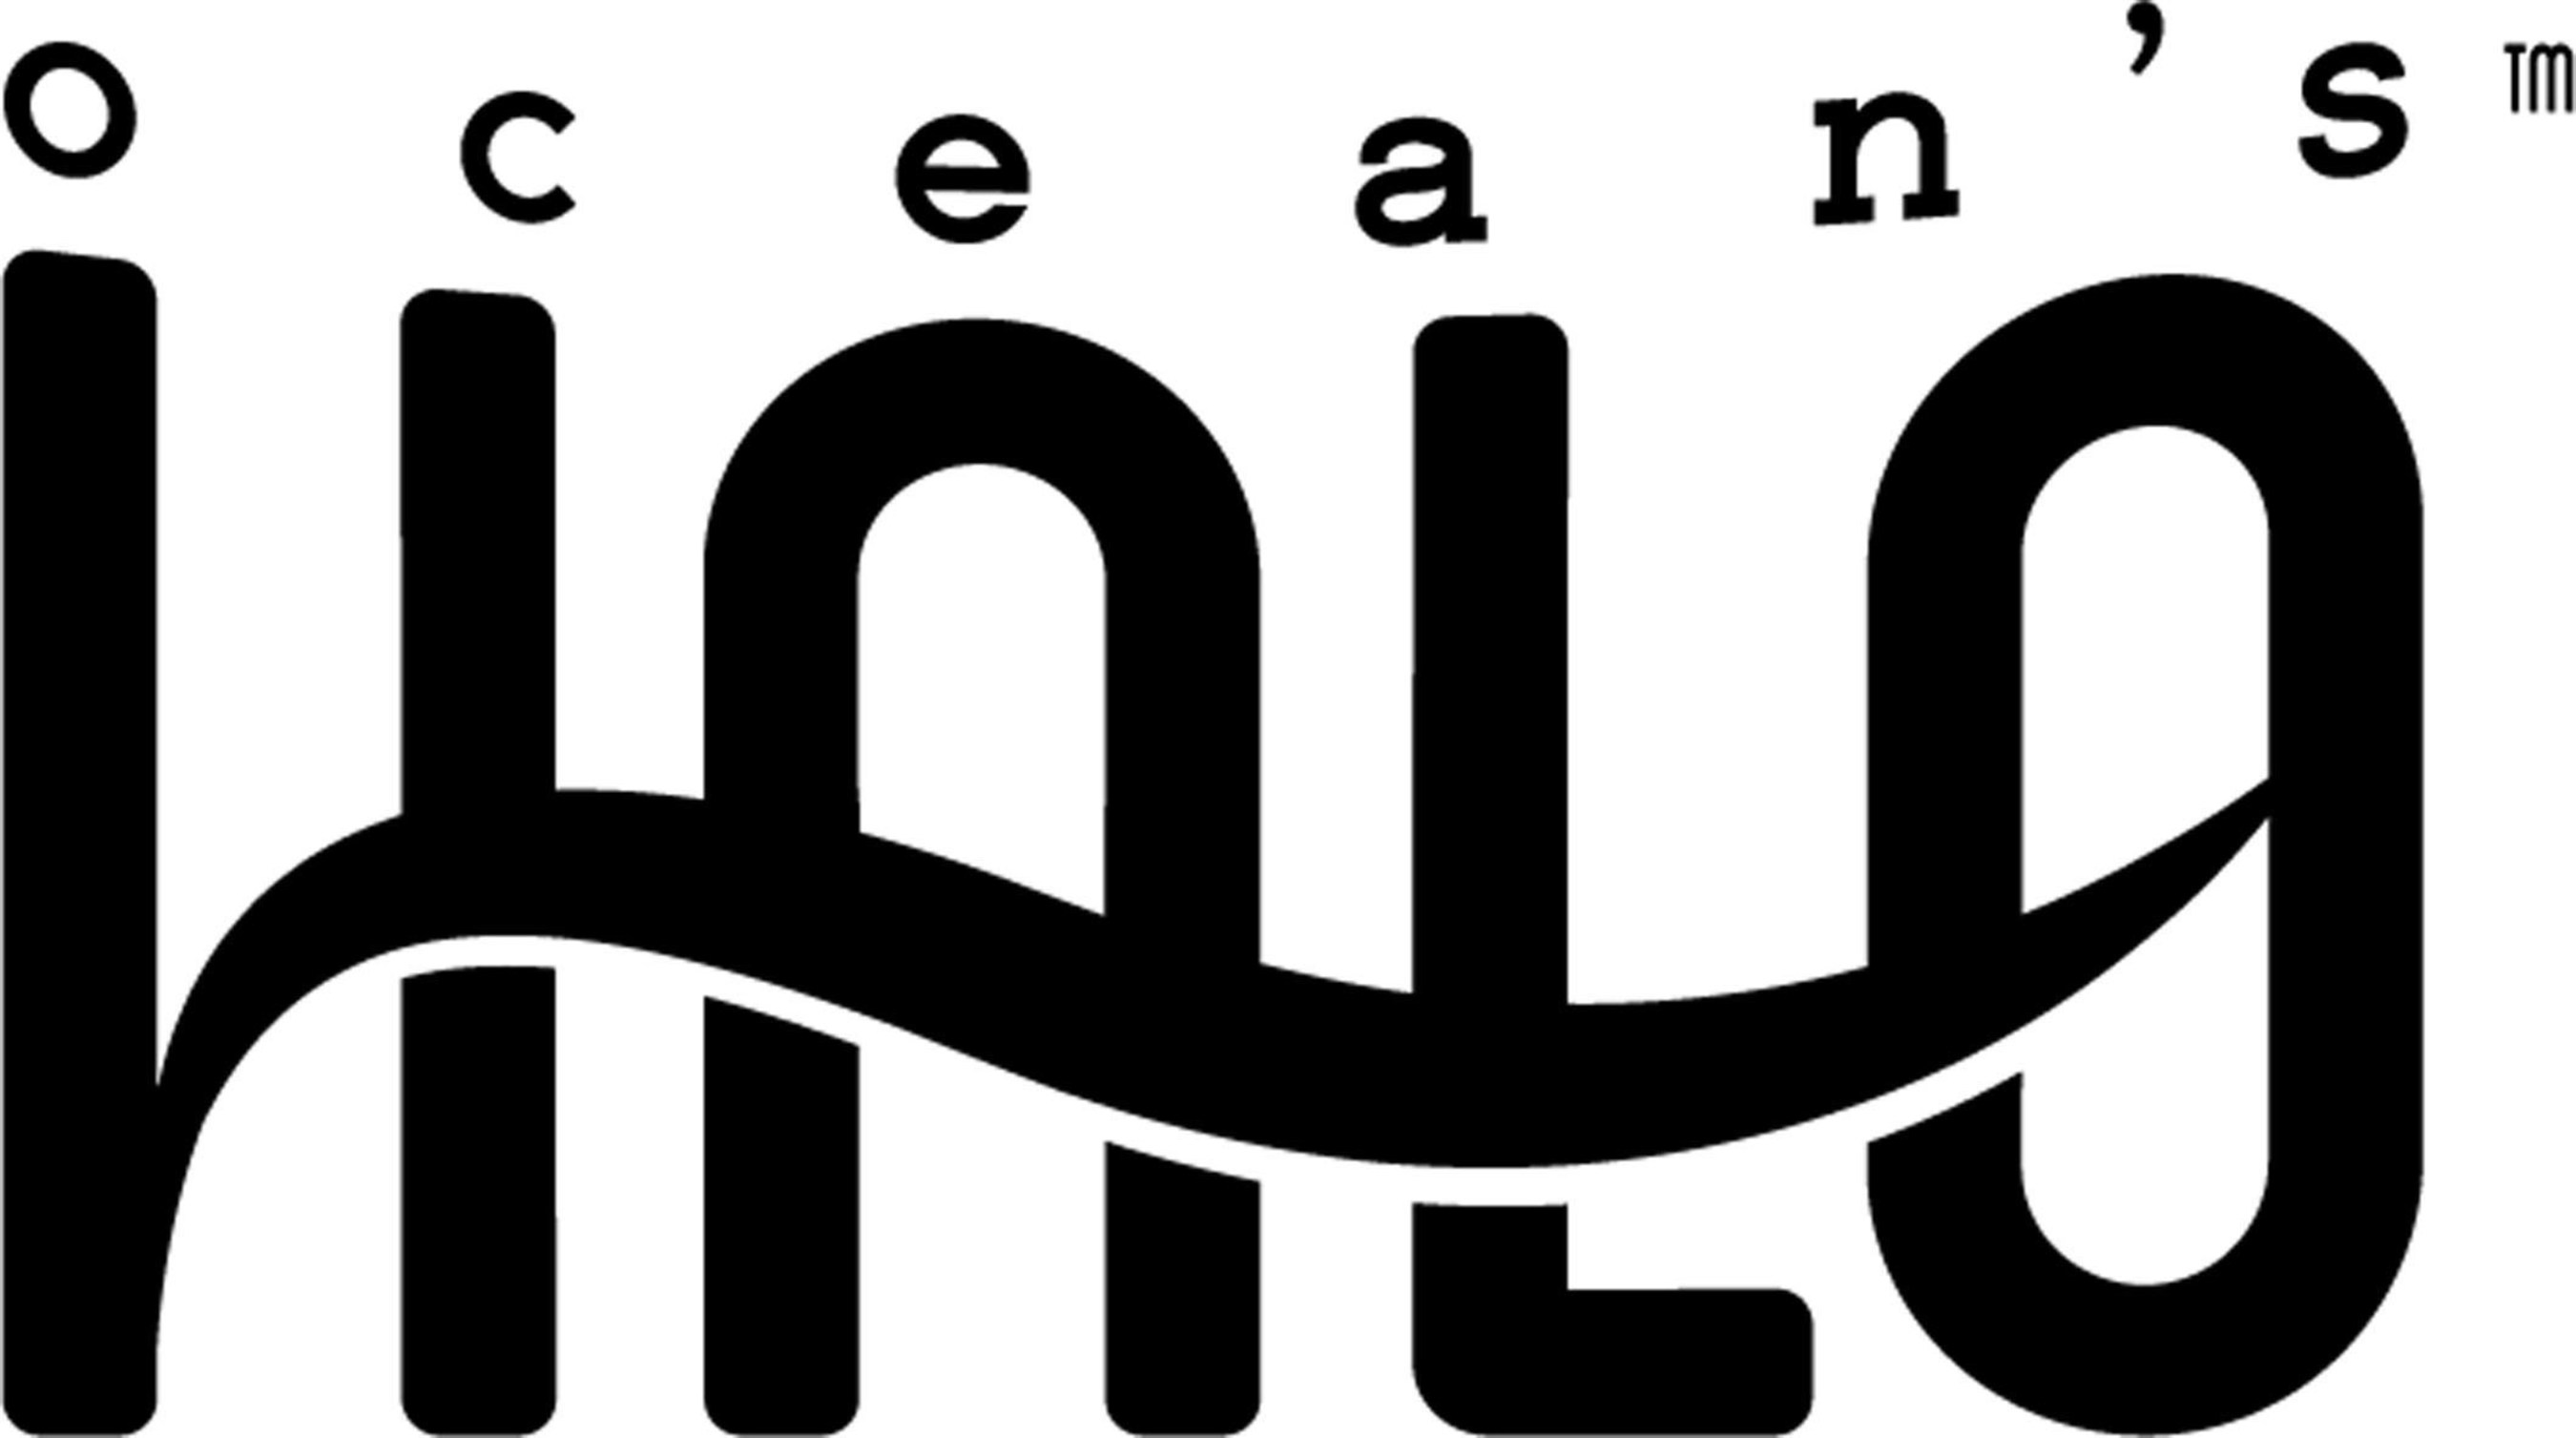 Ocean's Halo logo